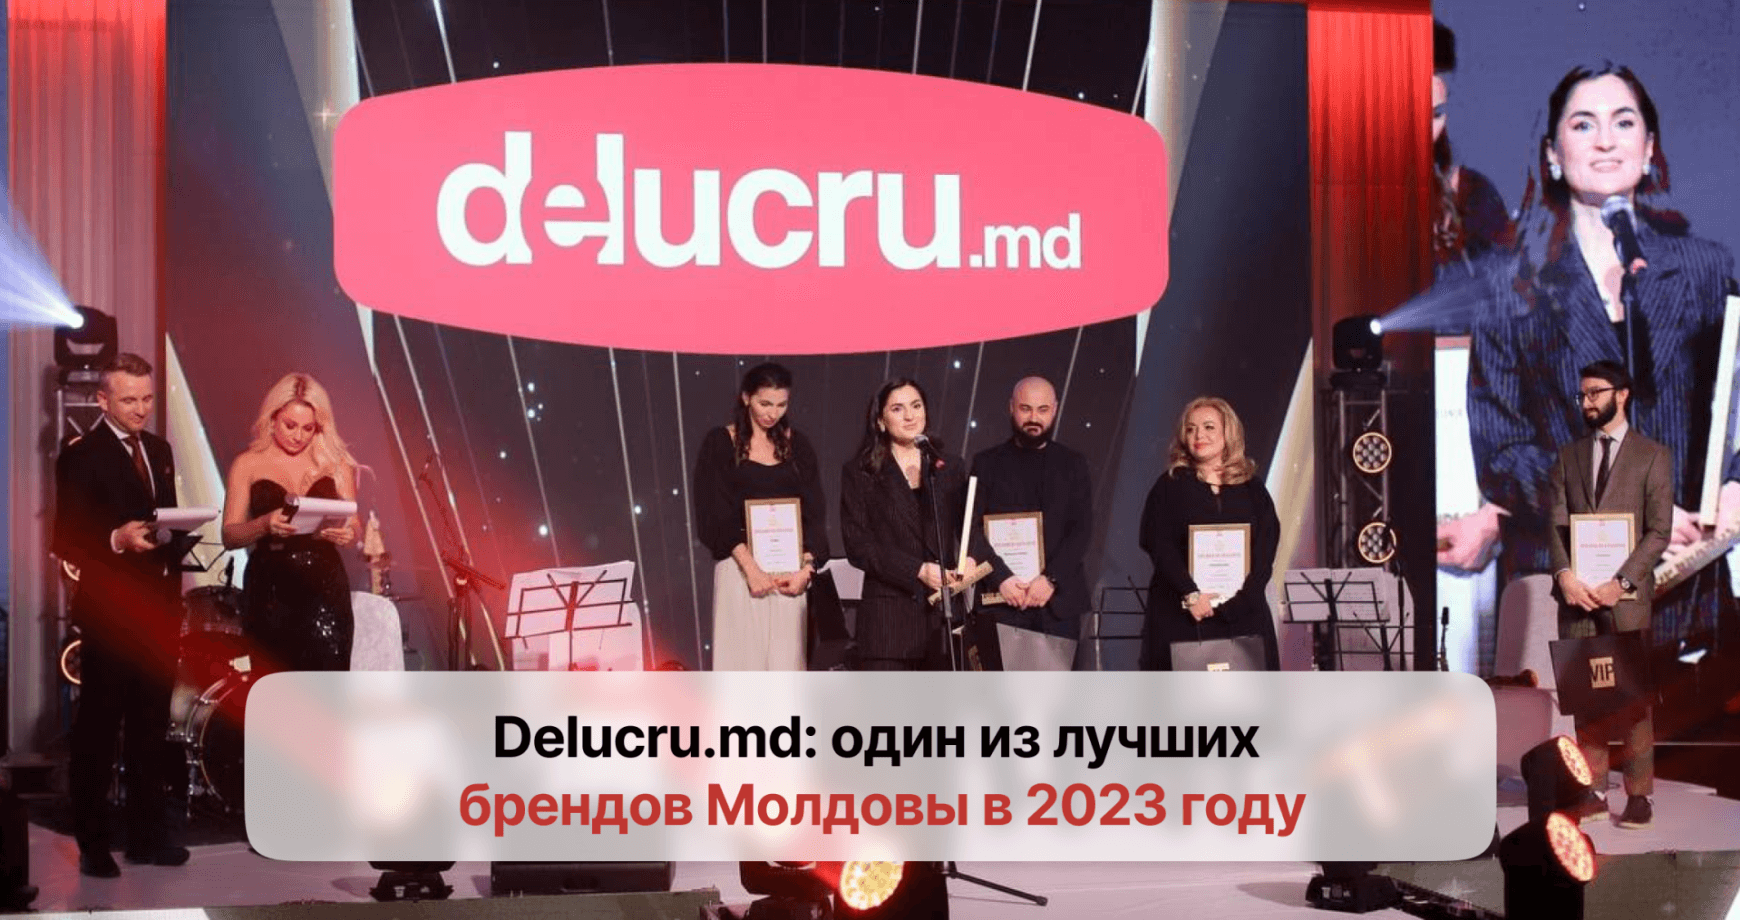 Компаниия delucru.md вошла в топ лучших брендов Молдовы в 2023 году